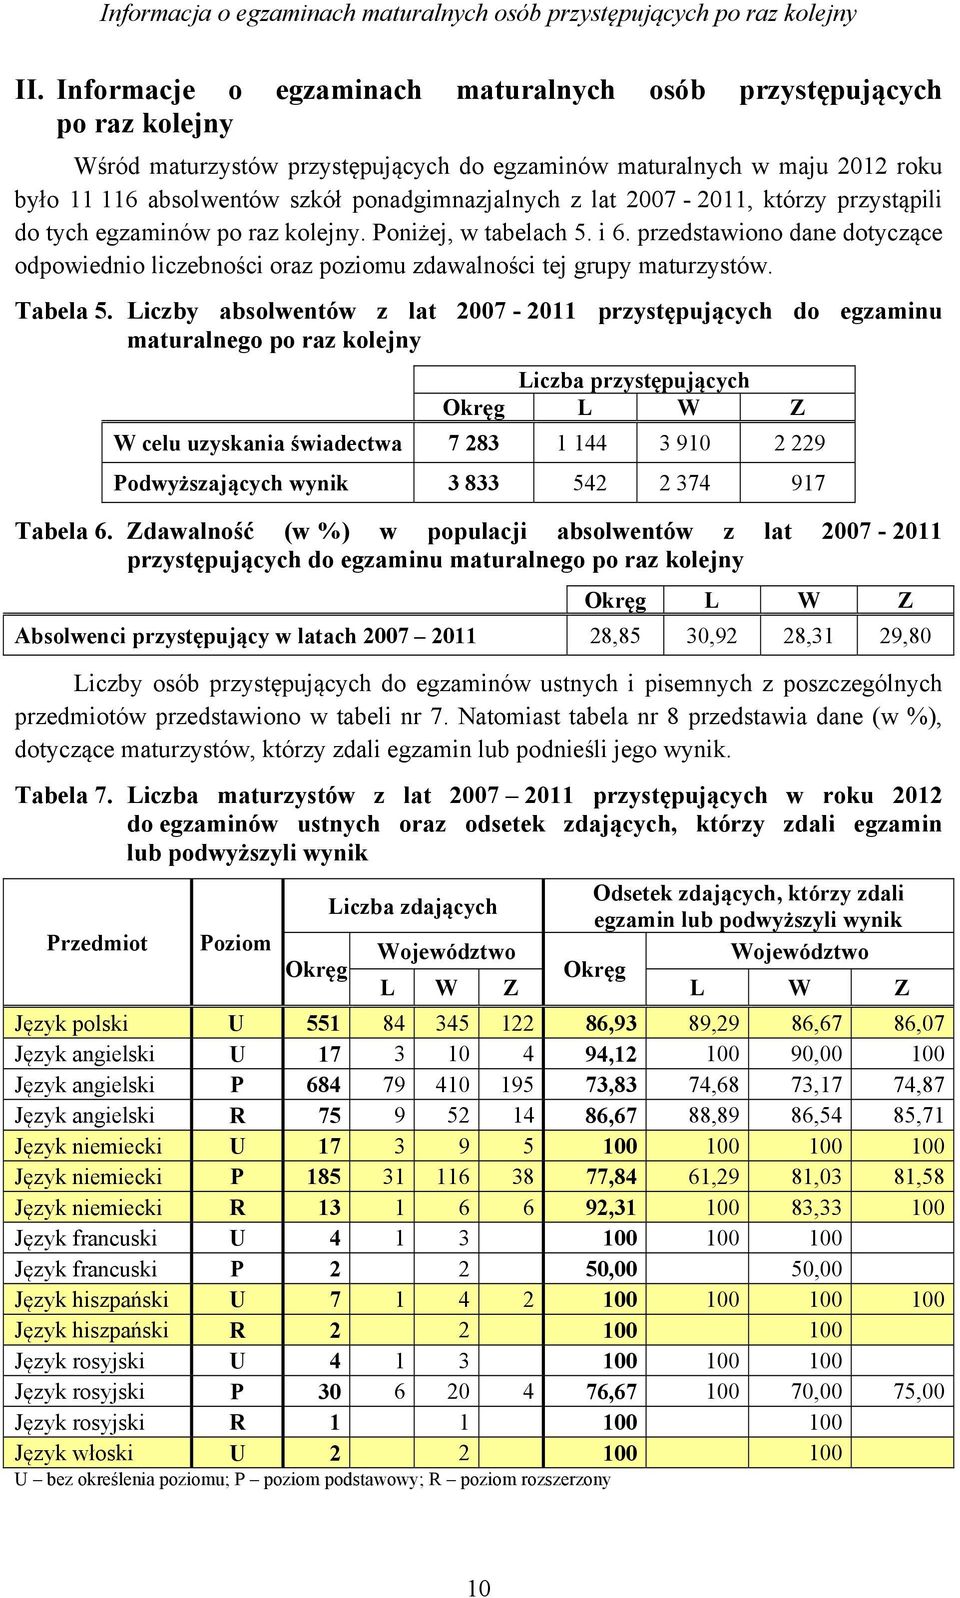 lat 2007-2011, którzy przystąpili do tych egzaminów po raz kolejny. Poniżej, w tabelach 5. i 6. przedstawiono dane dotyczące odpowiednio liczebności oraz poziomu zdawalności tej grupy maturzystów.